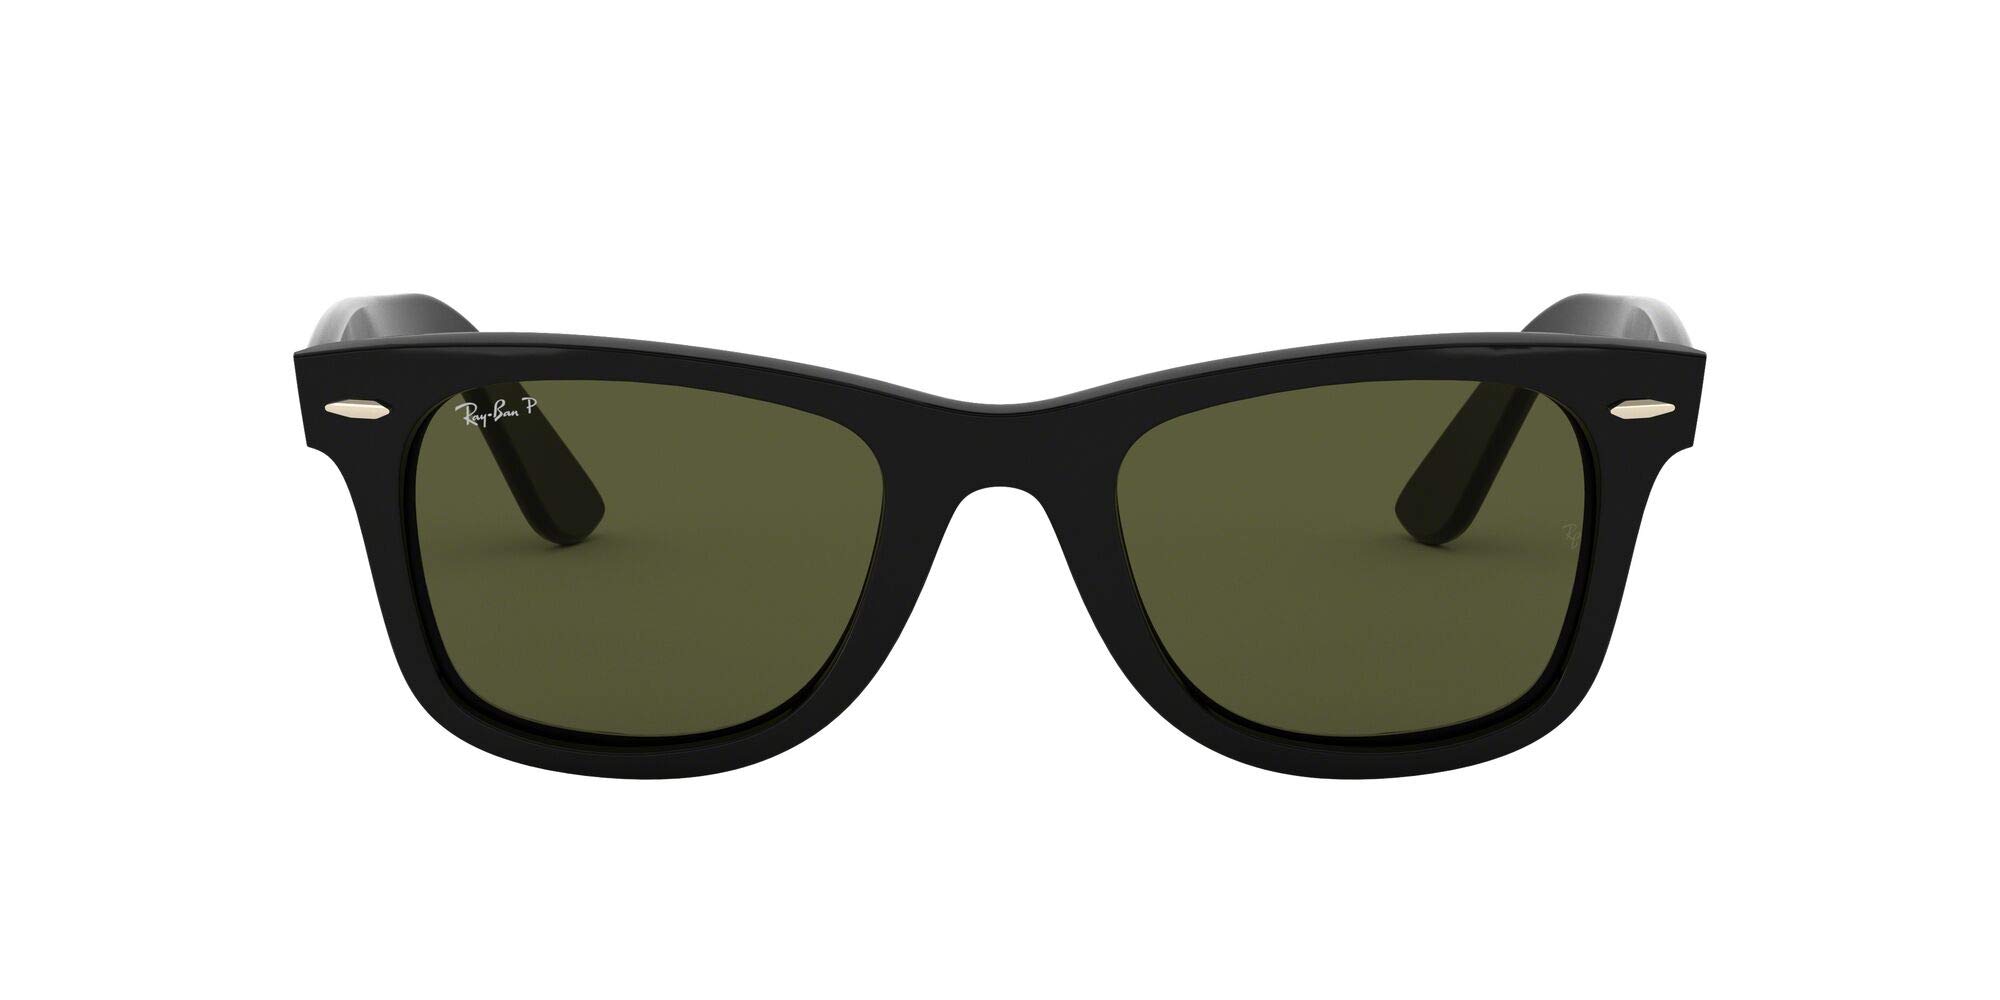 Mua Ray-Ban Unisex-Adult Square Sunglasses Black Frame Green Lens Medium  trên Amazon Mỹ chính hãng 2023 | Fado